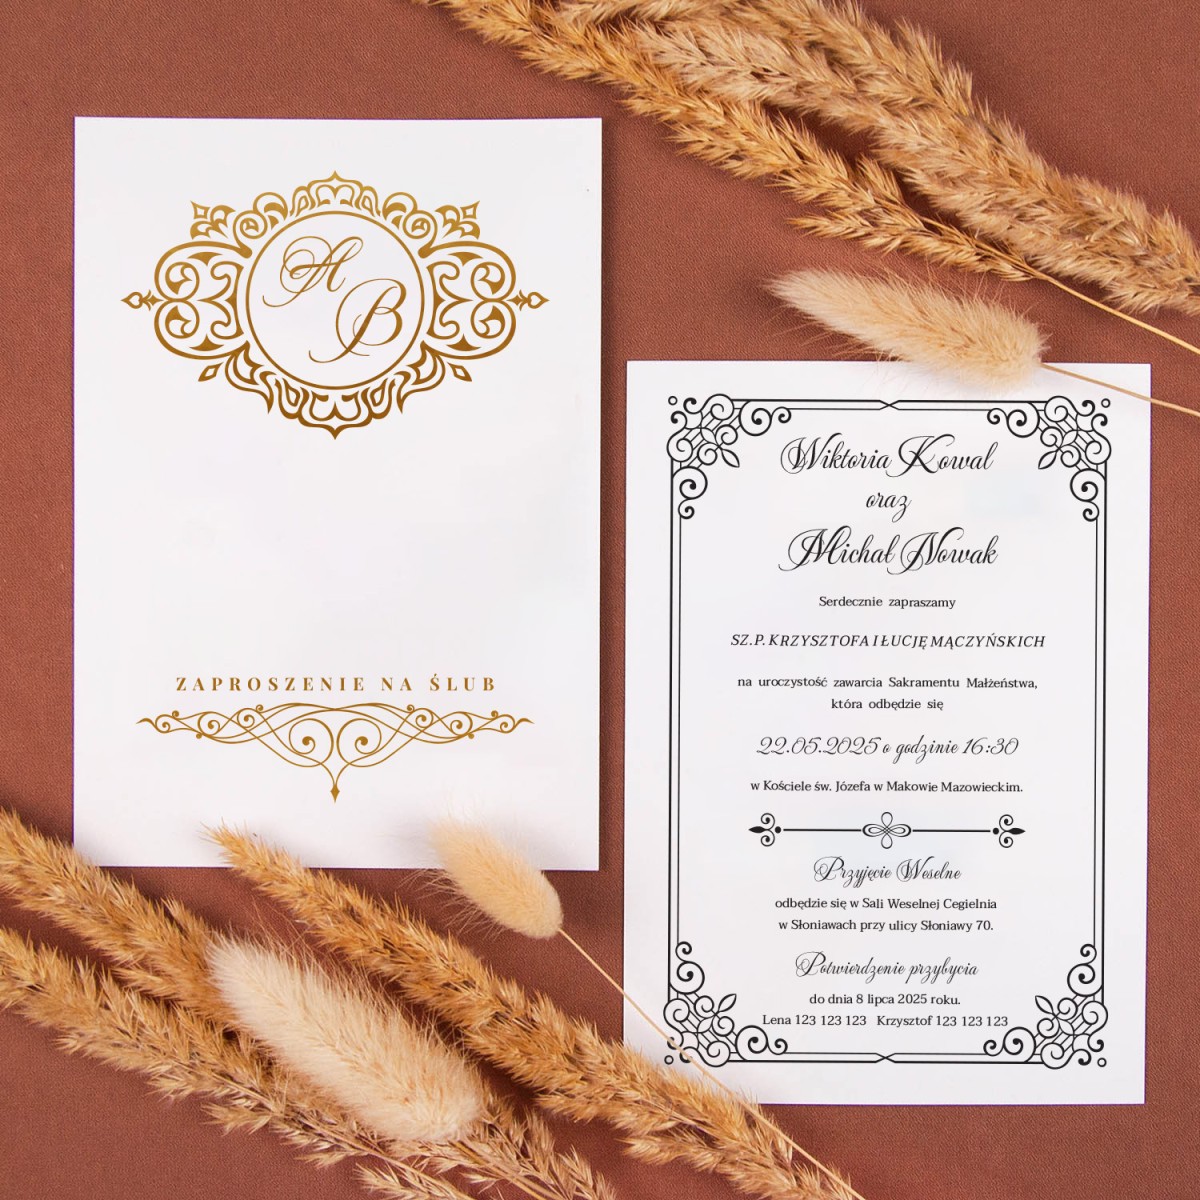 Minimalistyczne zaproszenia ślubne z pozłacanymi napisami na białym papierze - Ornaments